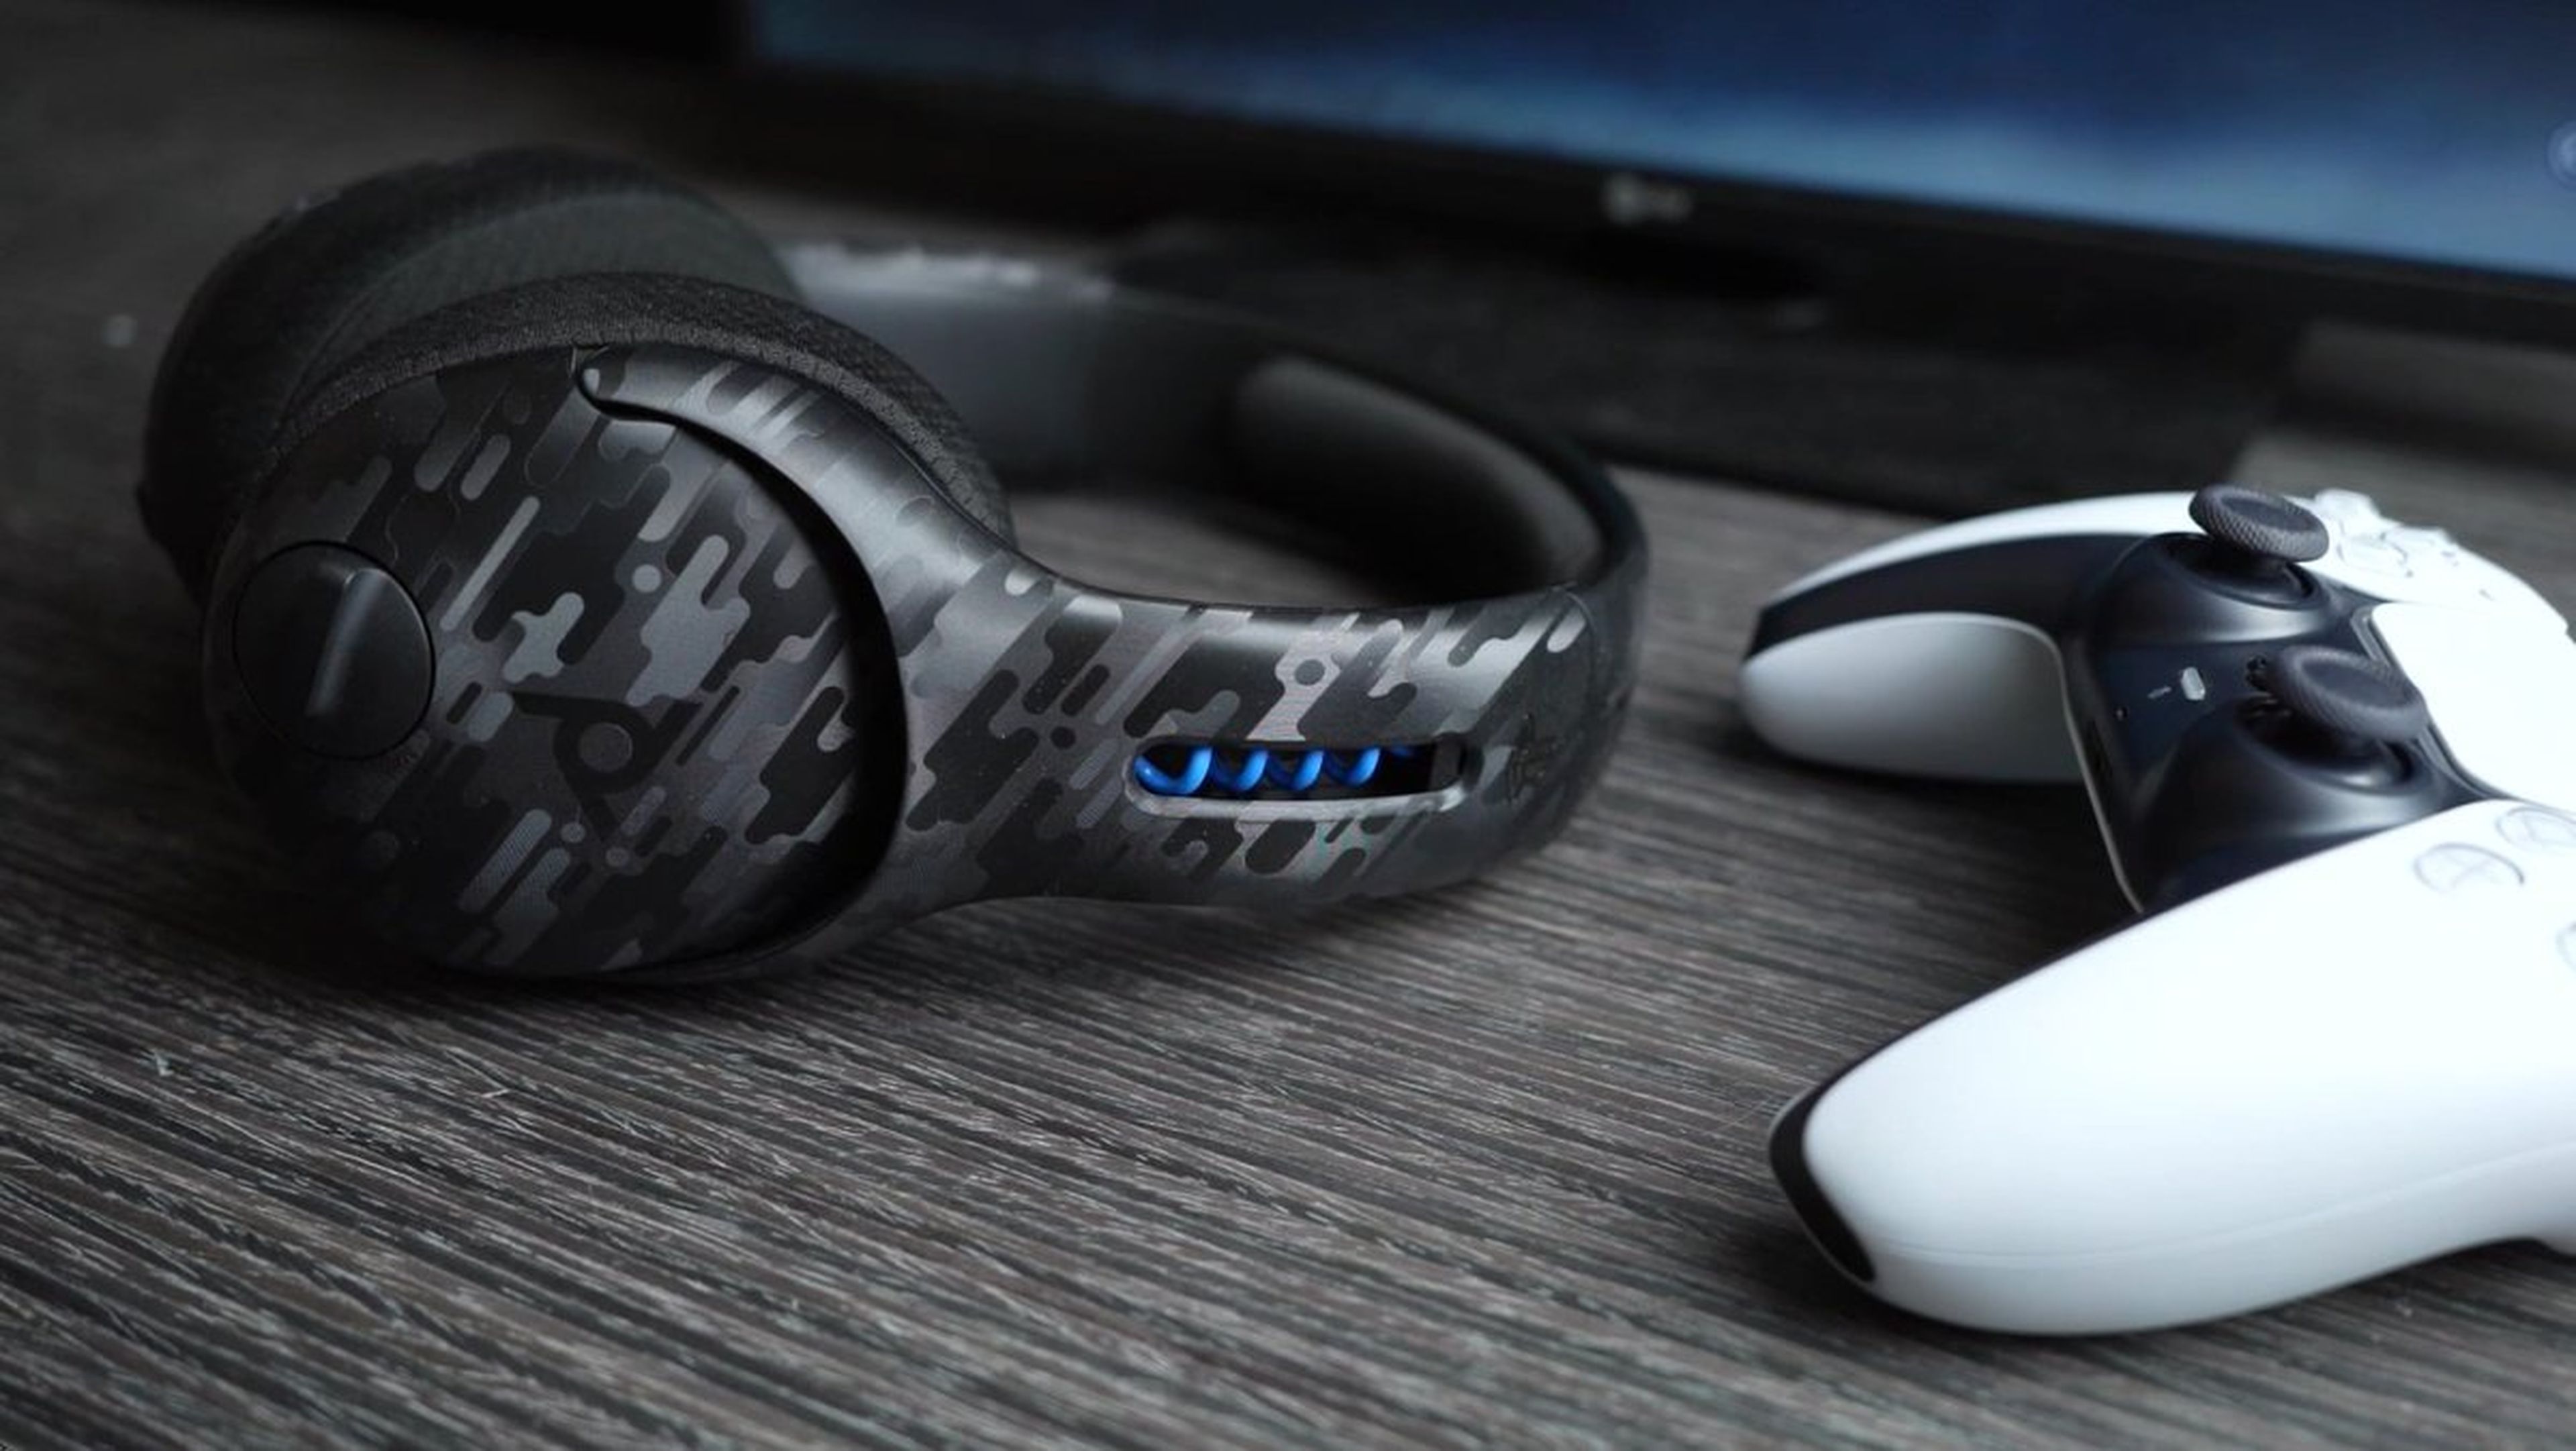 Mejores auriculares inalámbricos para PS5: Pulse 3D de Sony y más